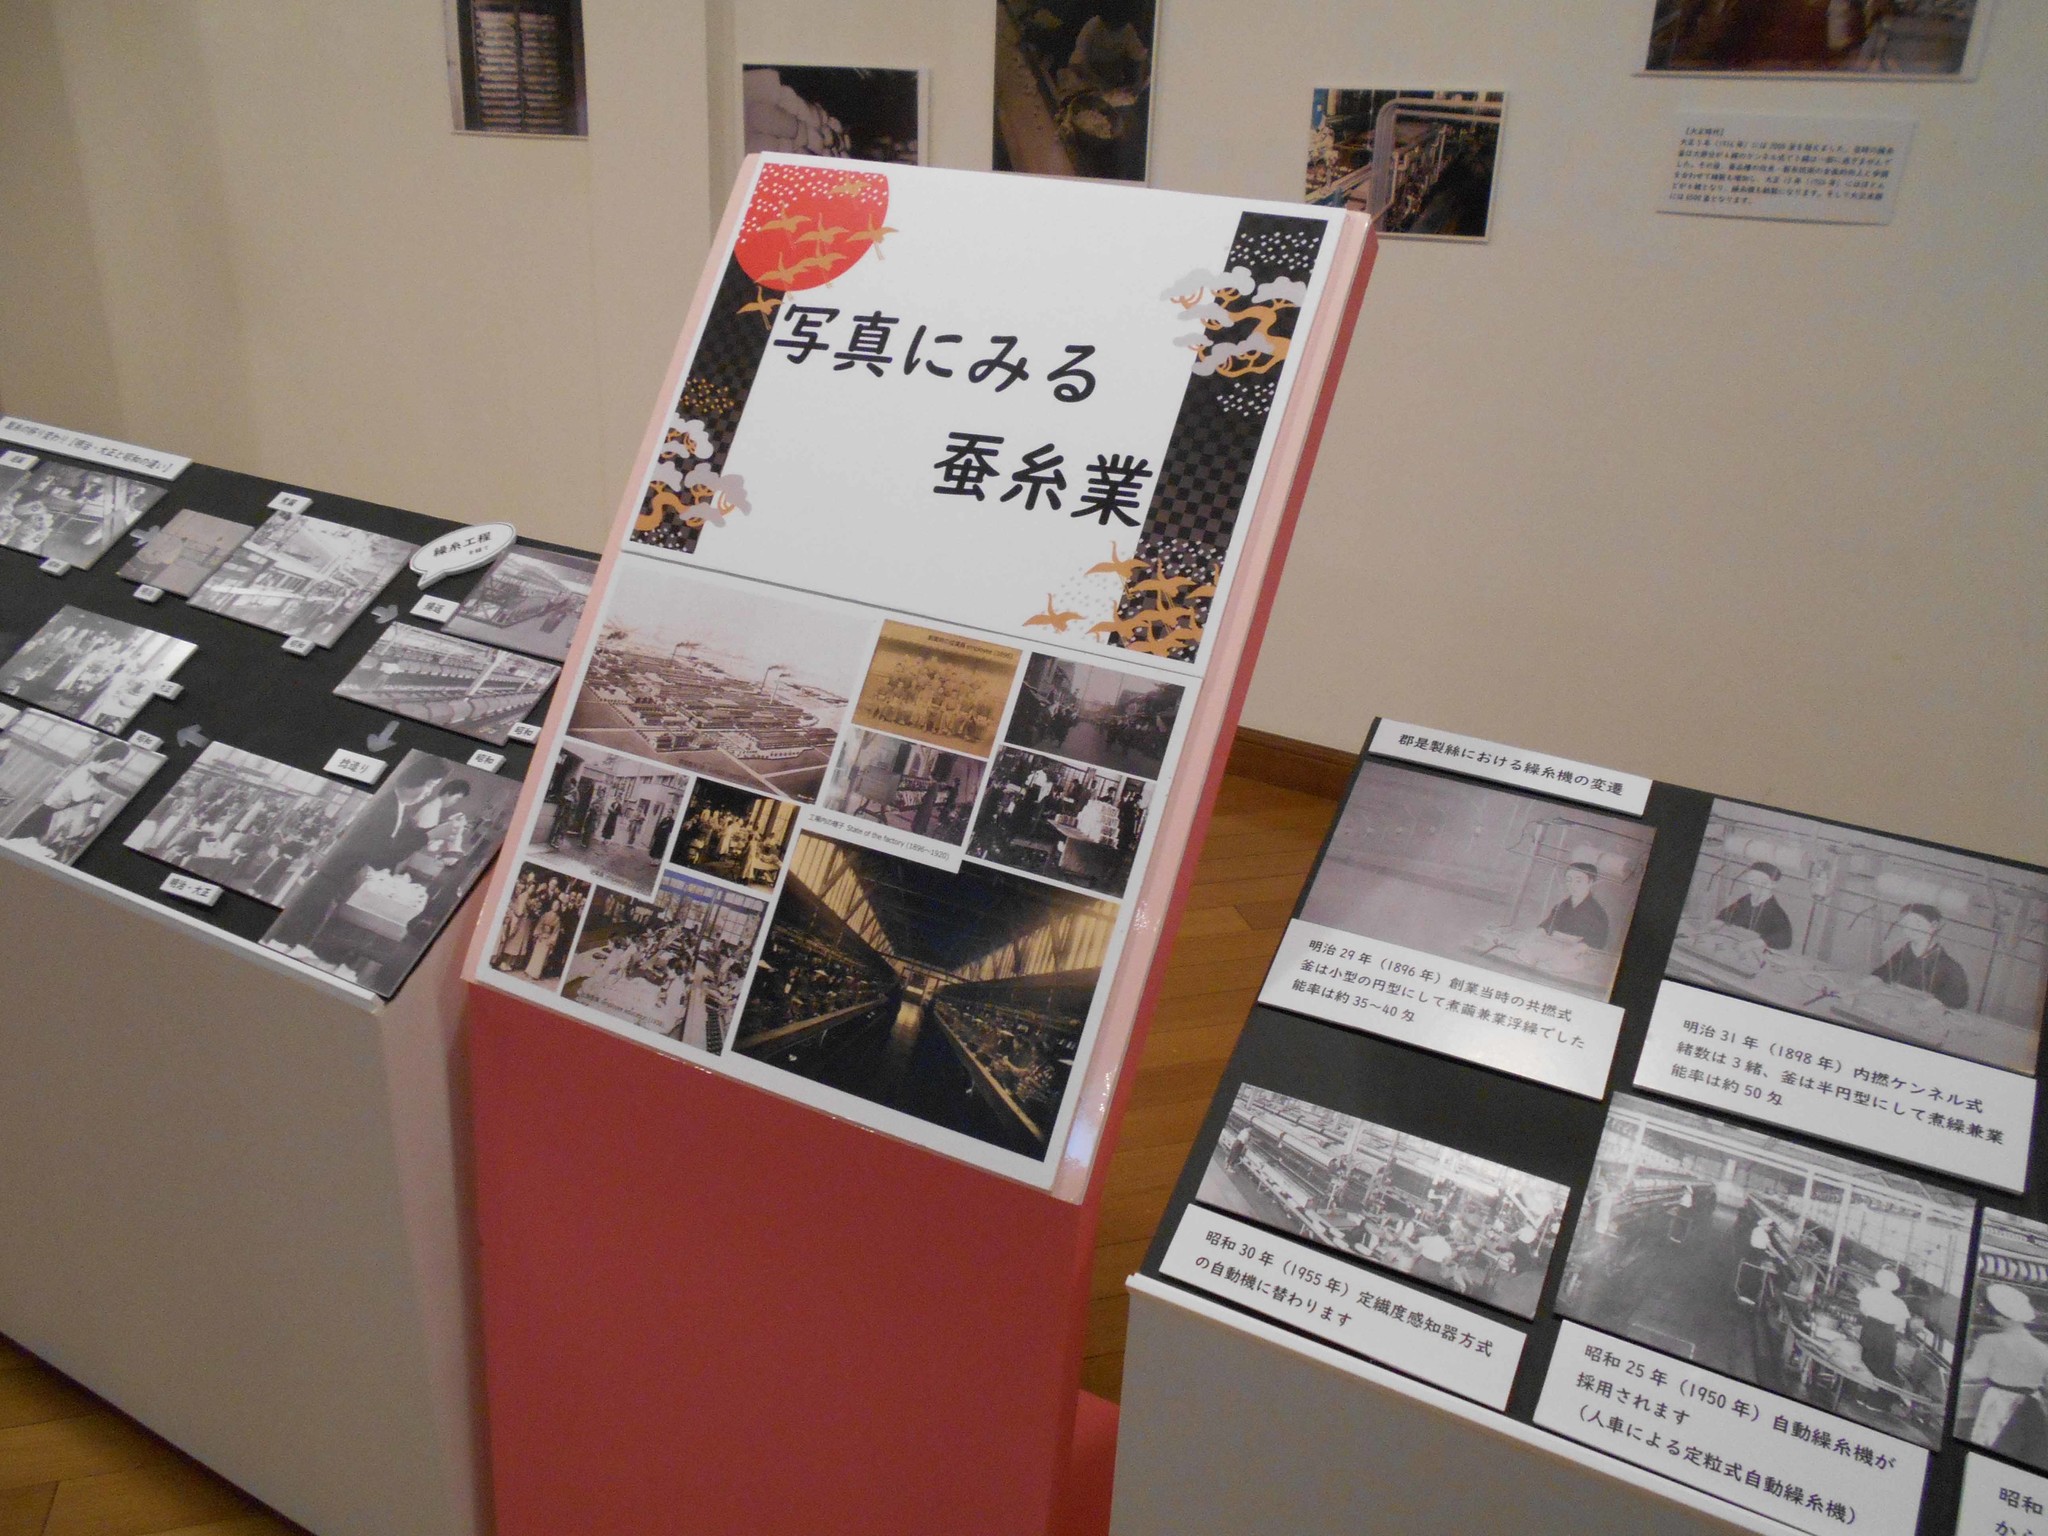 グンゼ博物苑 明治から昭和の京都蚕糸業の歴史を写真で振り返る